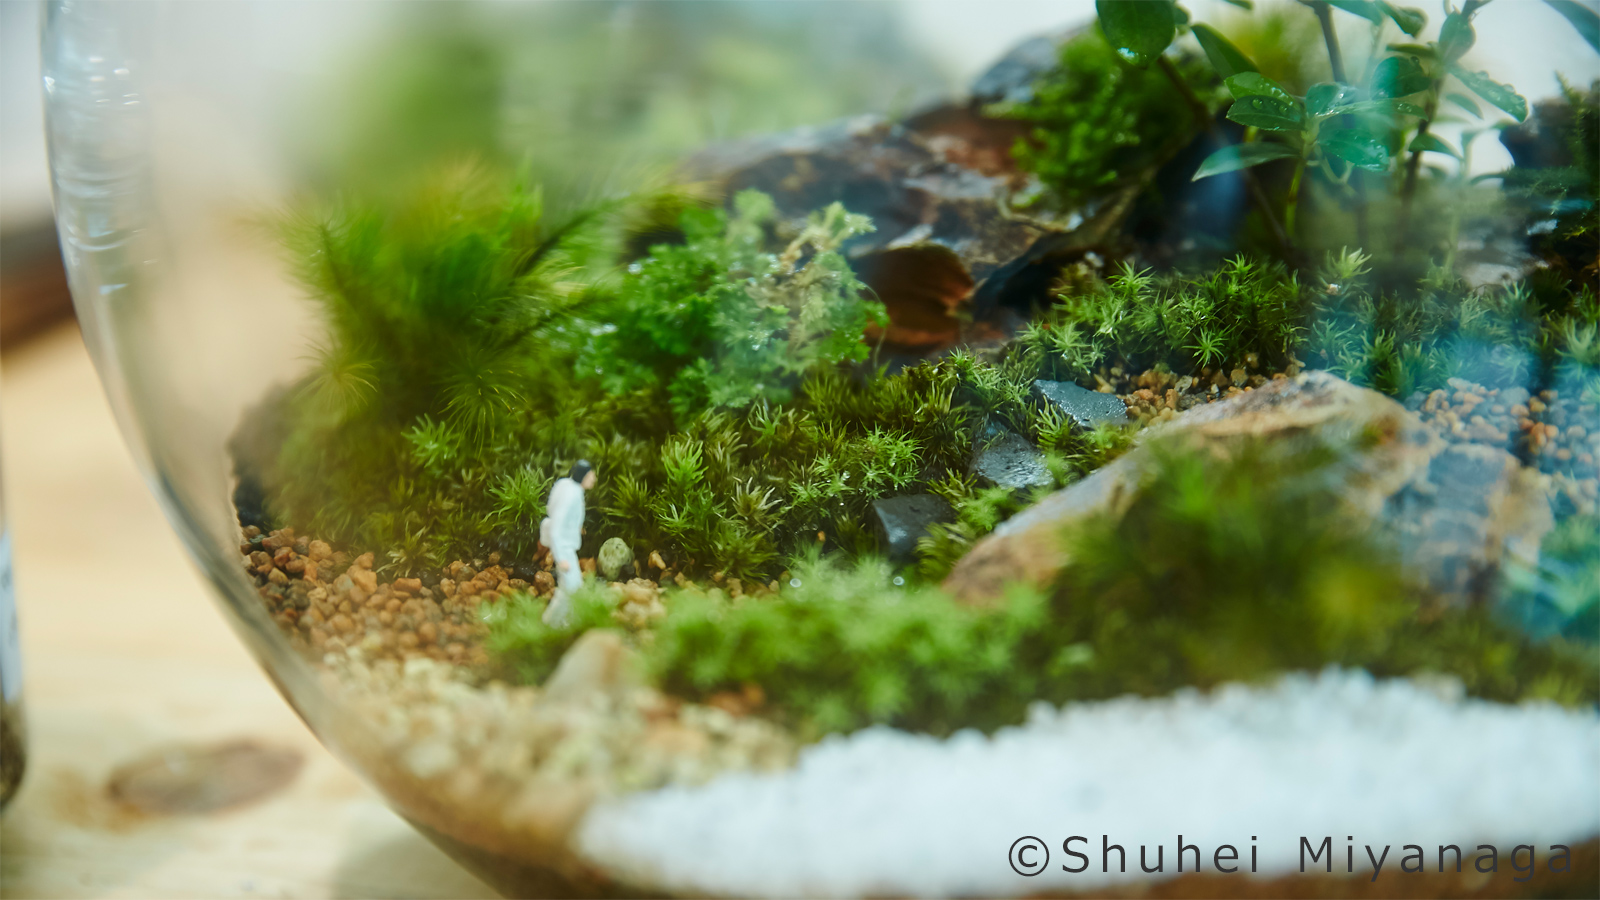 自宅で小さな森を愛でる 苔テラリウム の世界 川本毅さん 好きをかたちに Itoshino 個人のお客さま キヤノン